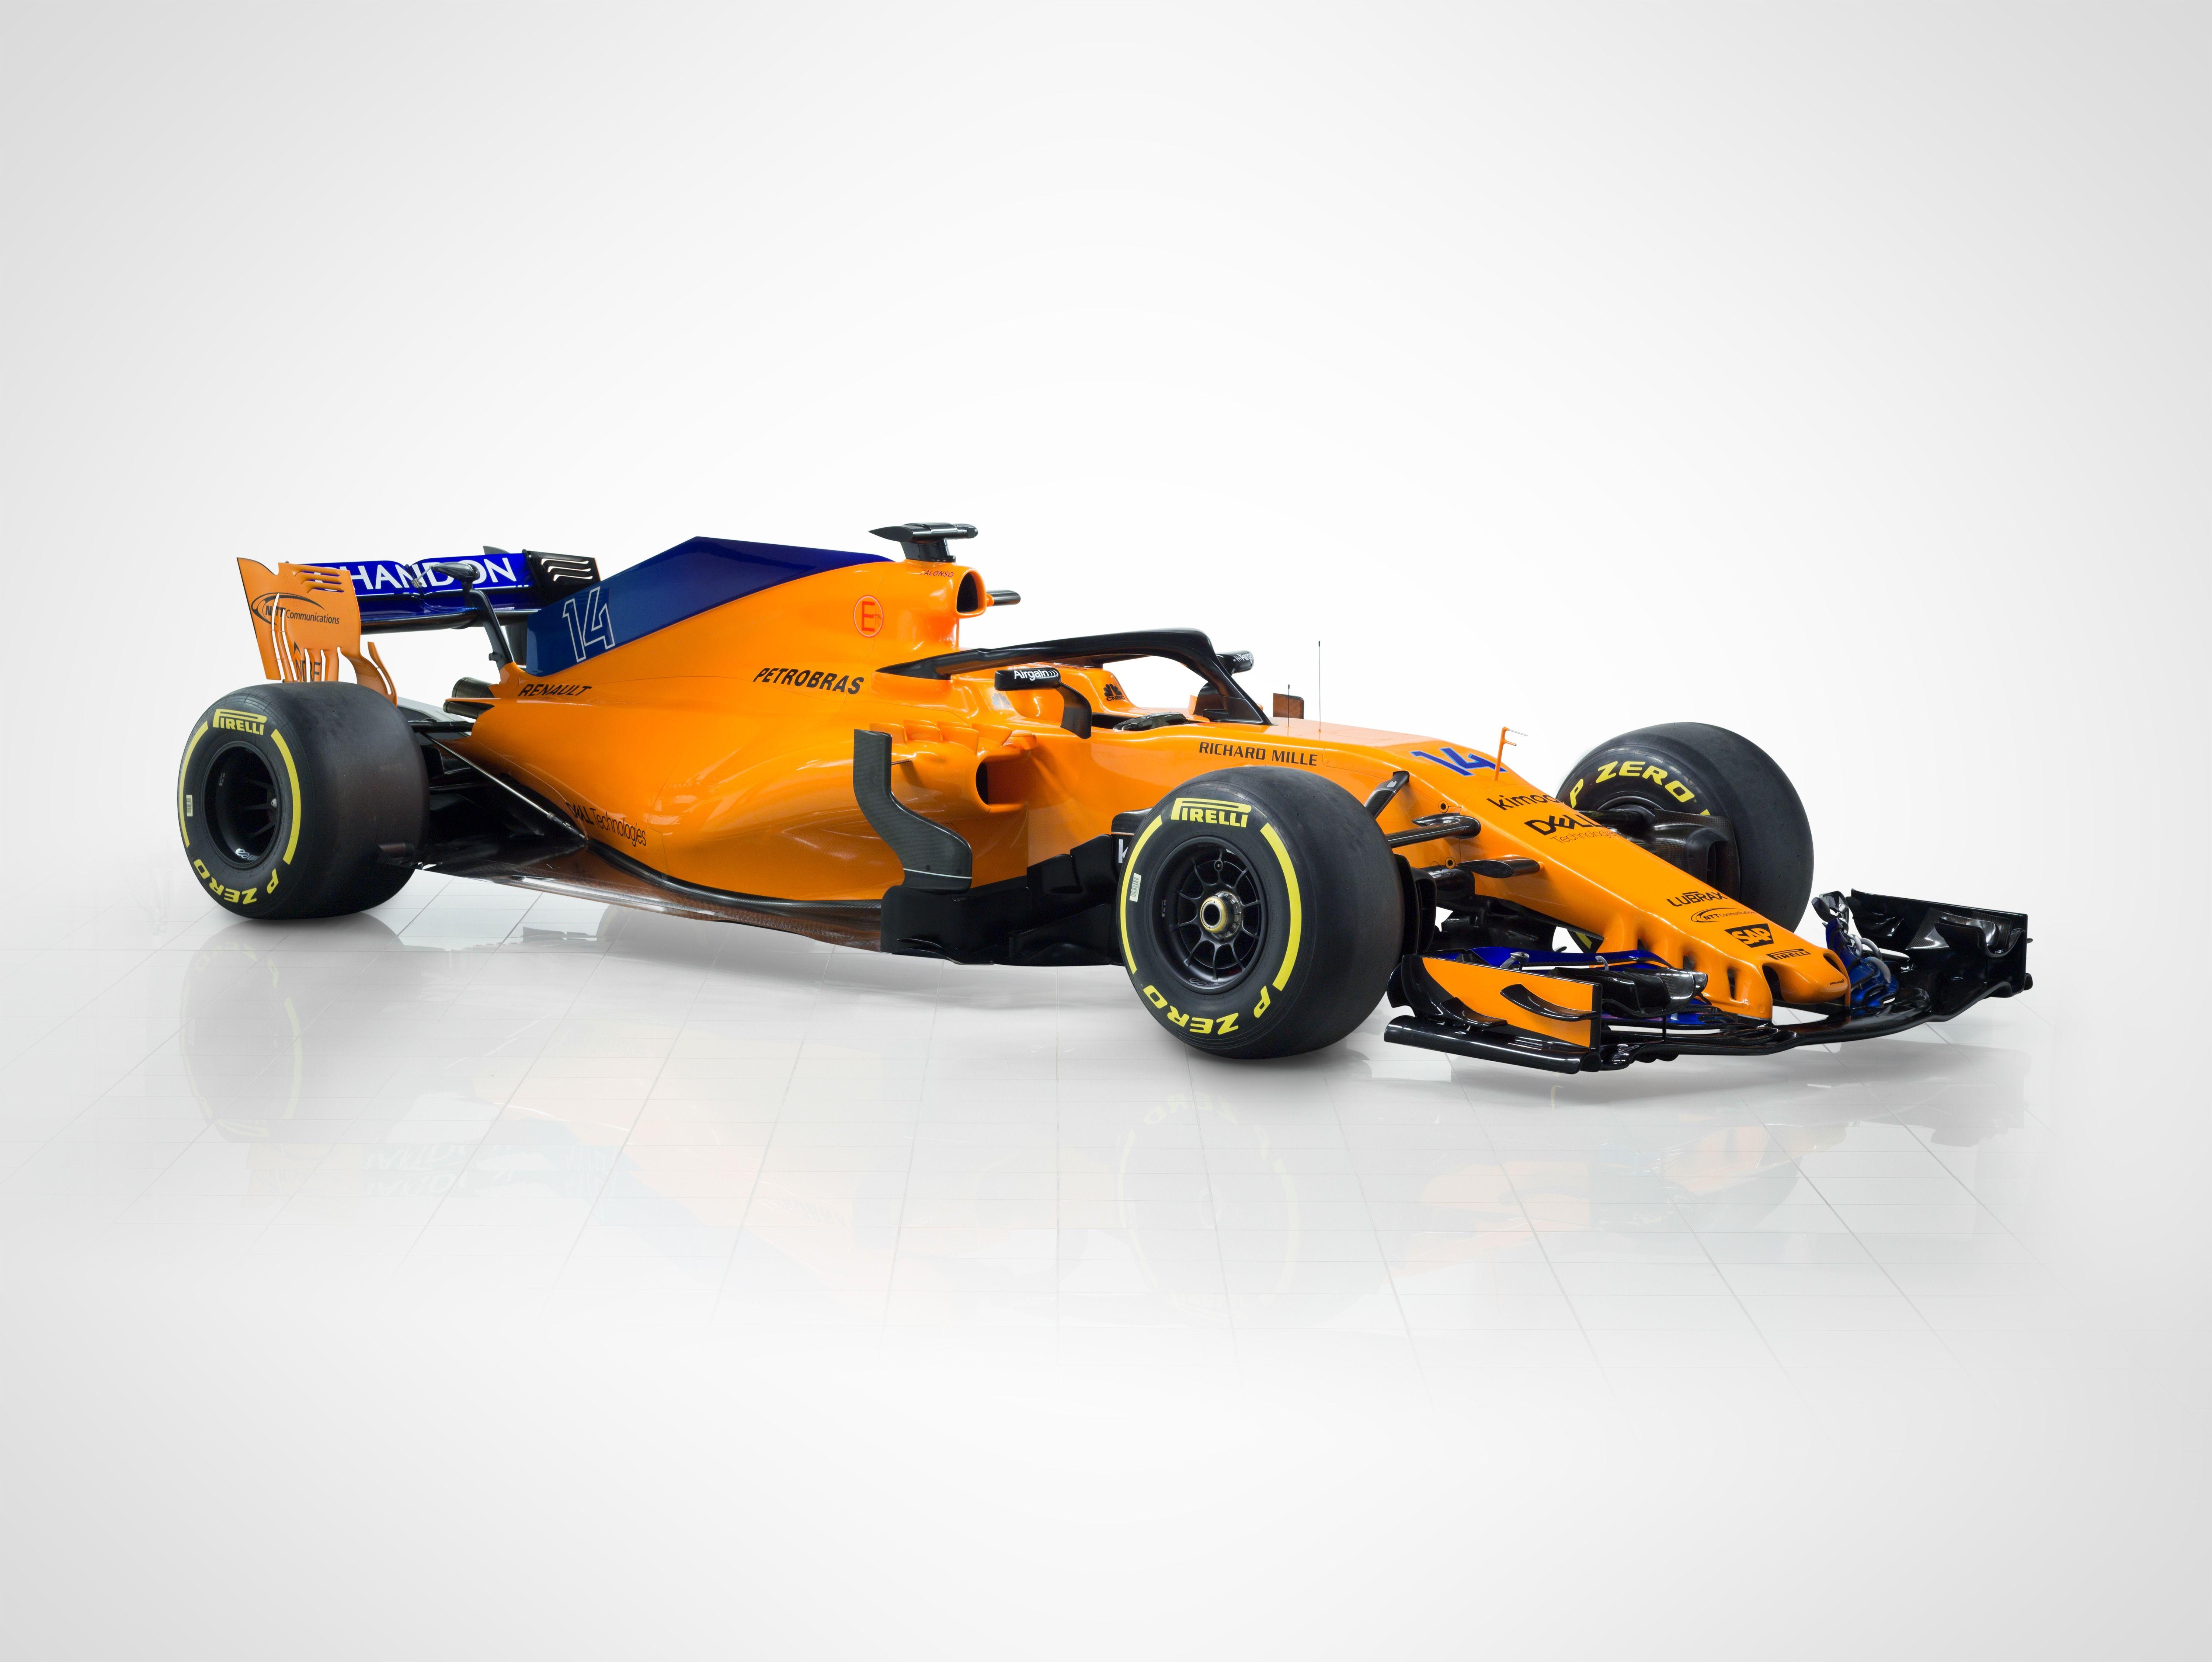 McLaren MCL33 F1 car launch picture